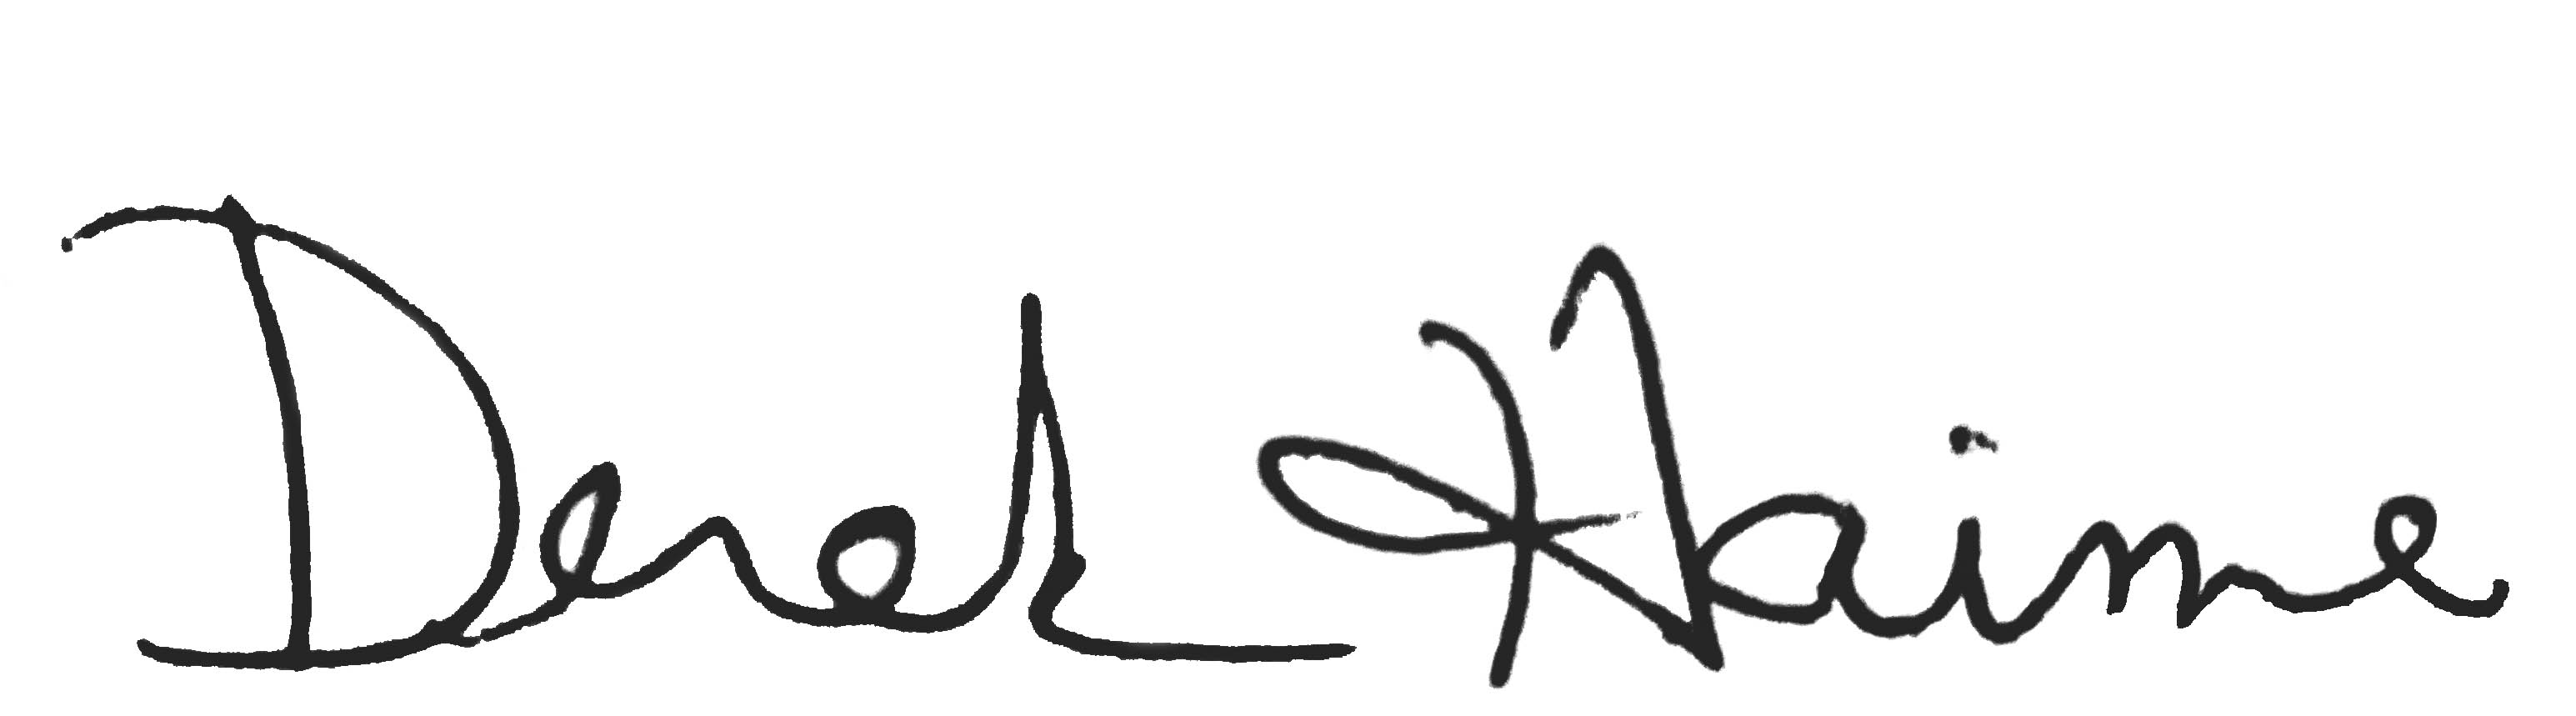 Signature de Derek Haime